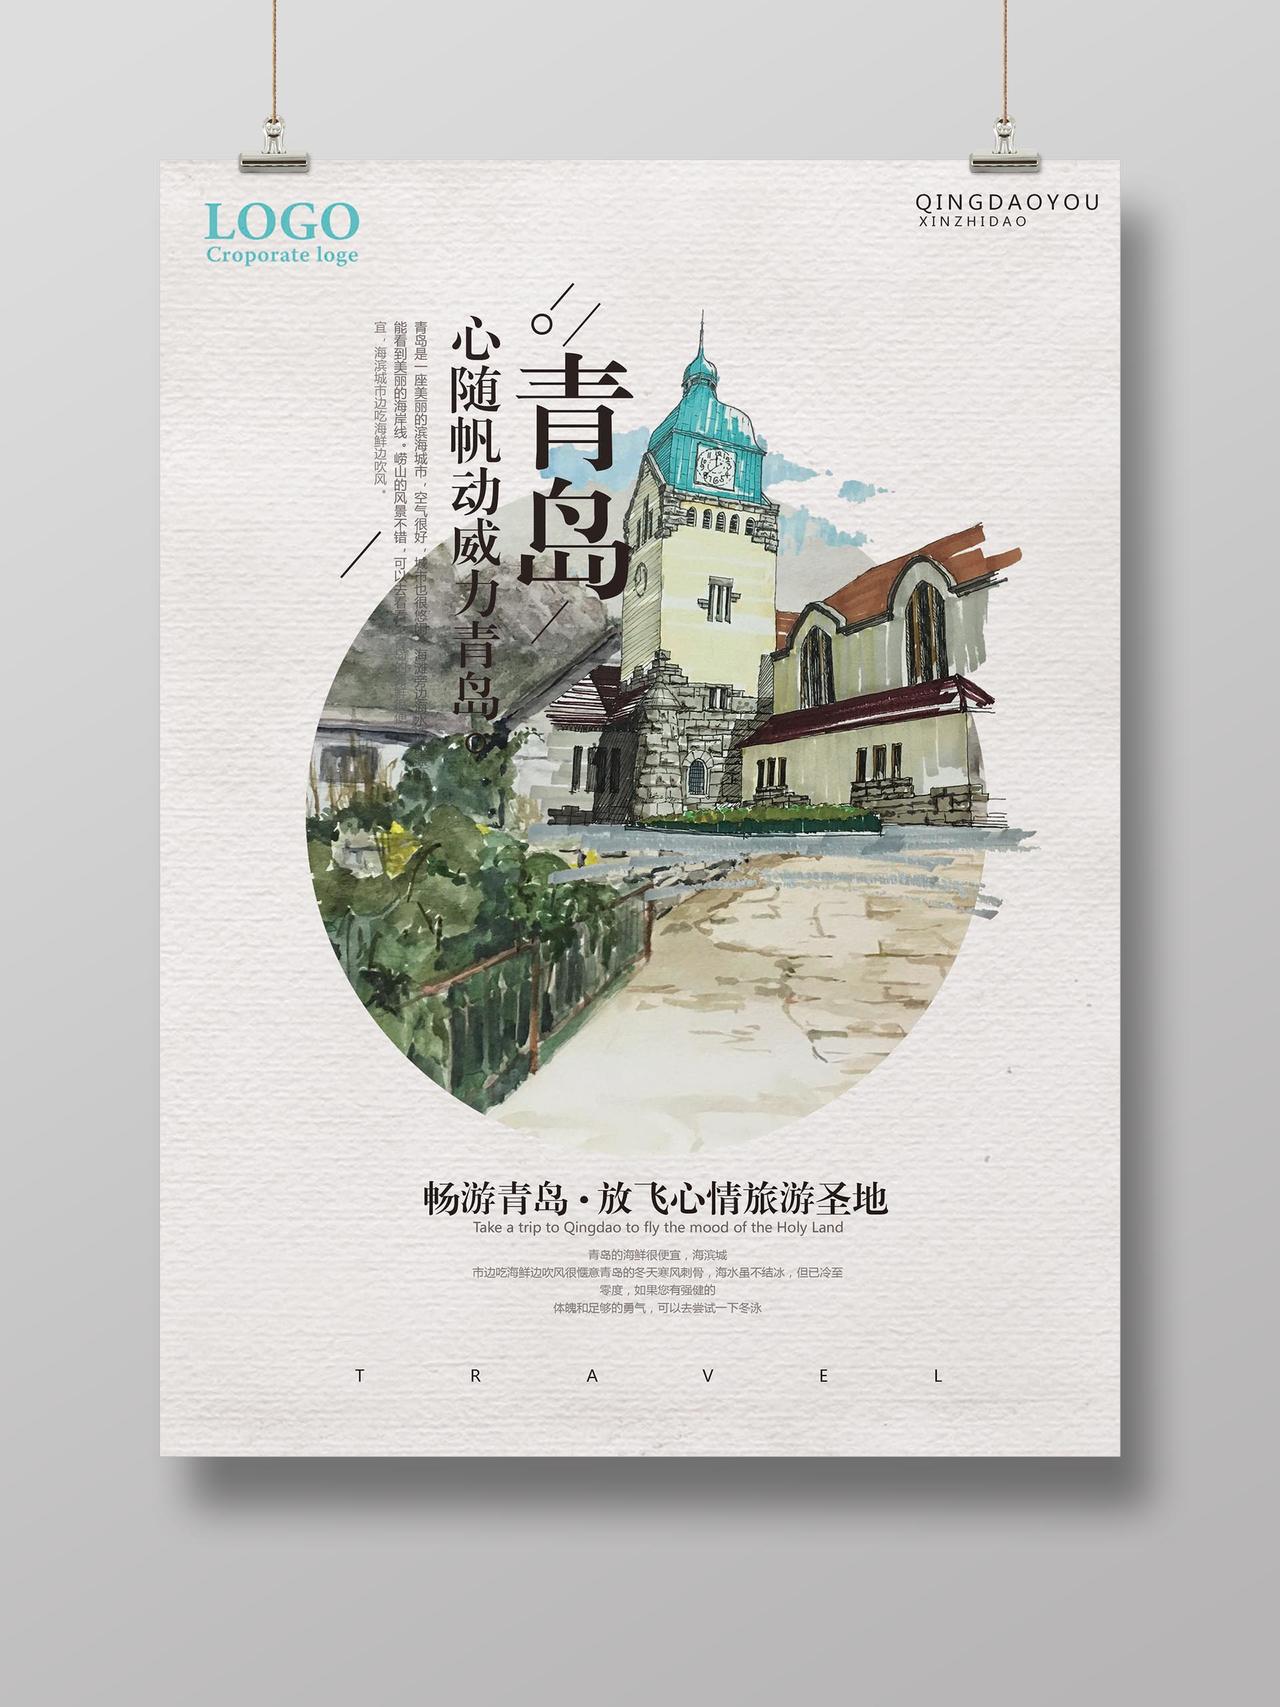 文艺水彩画青岛旅游宣传海报